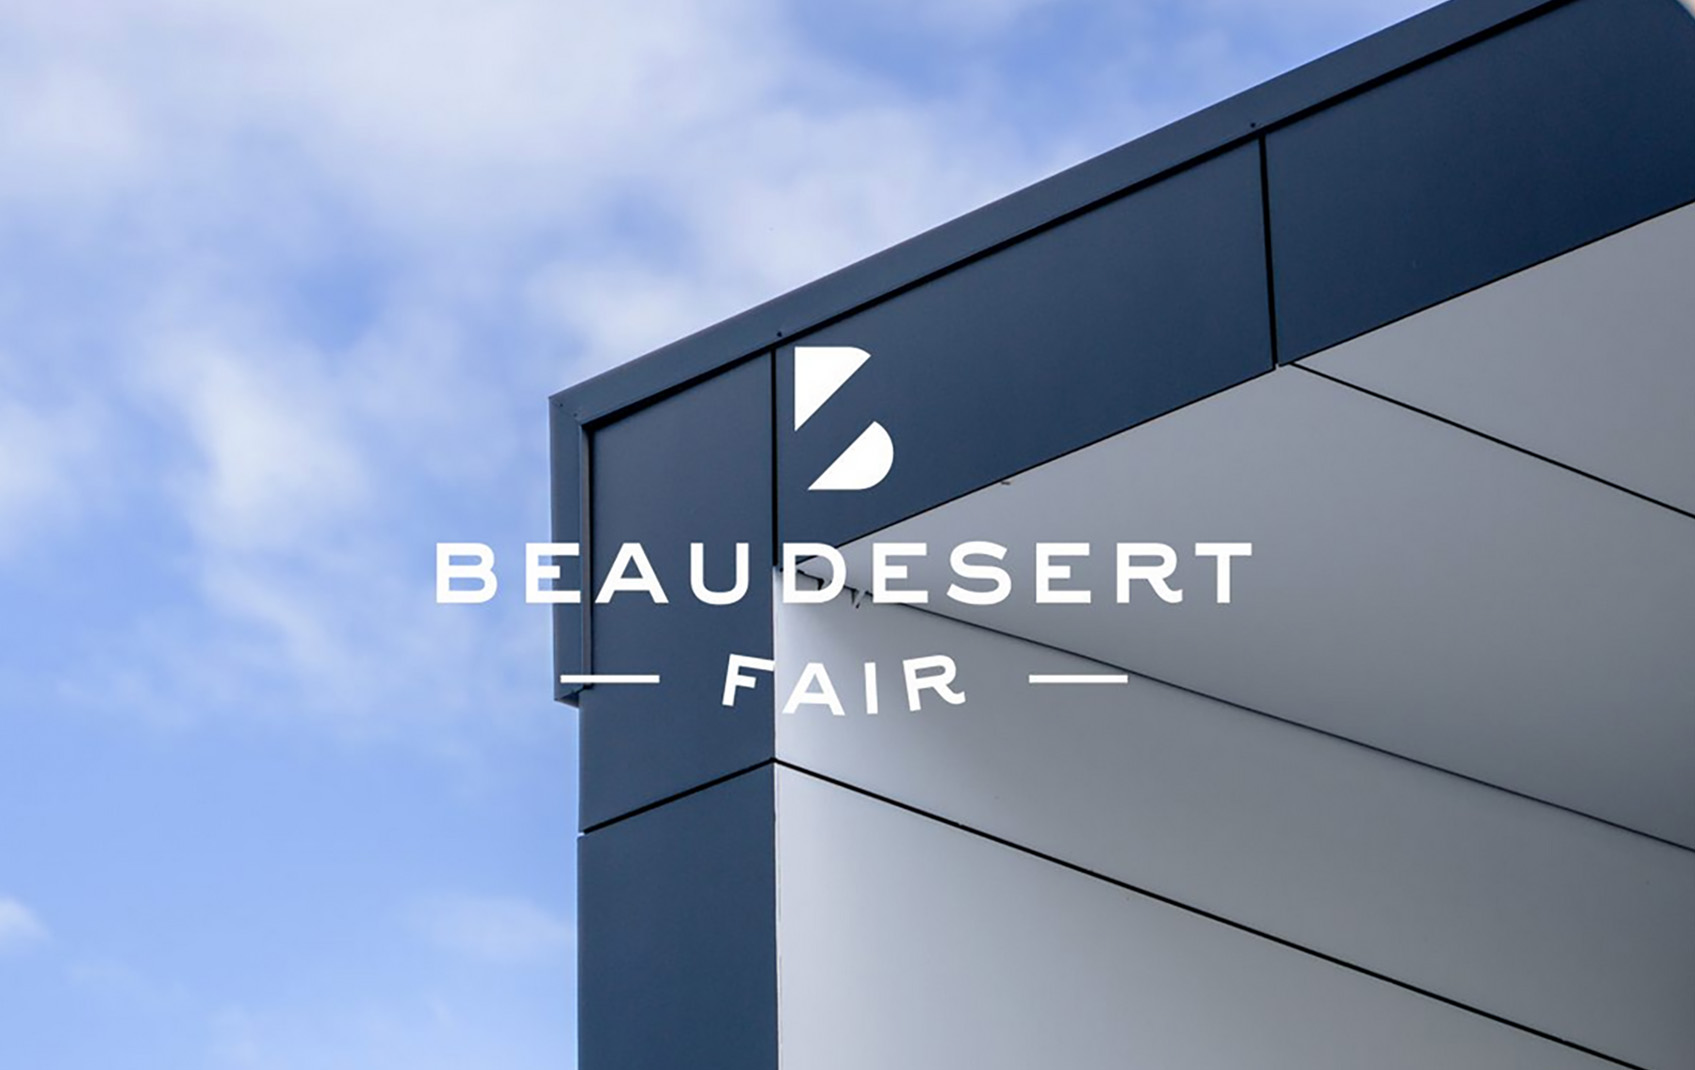 Beaudesert Fair